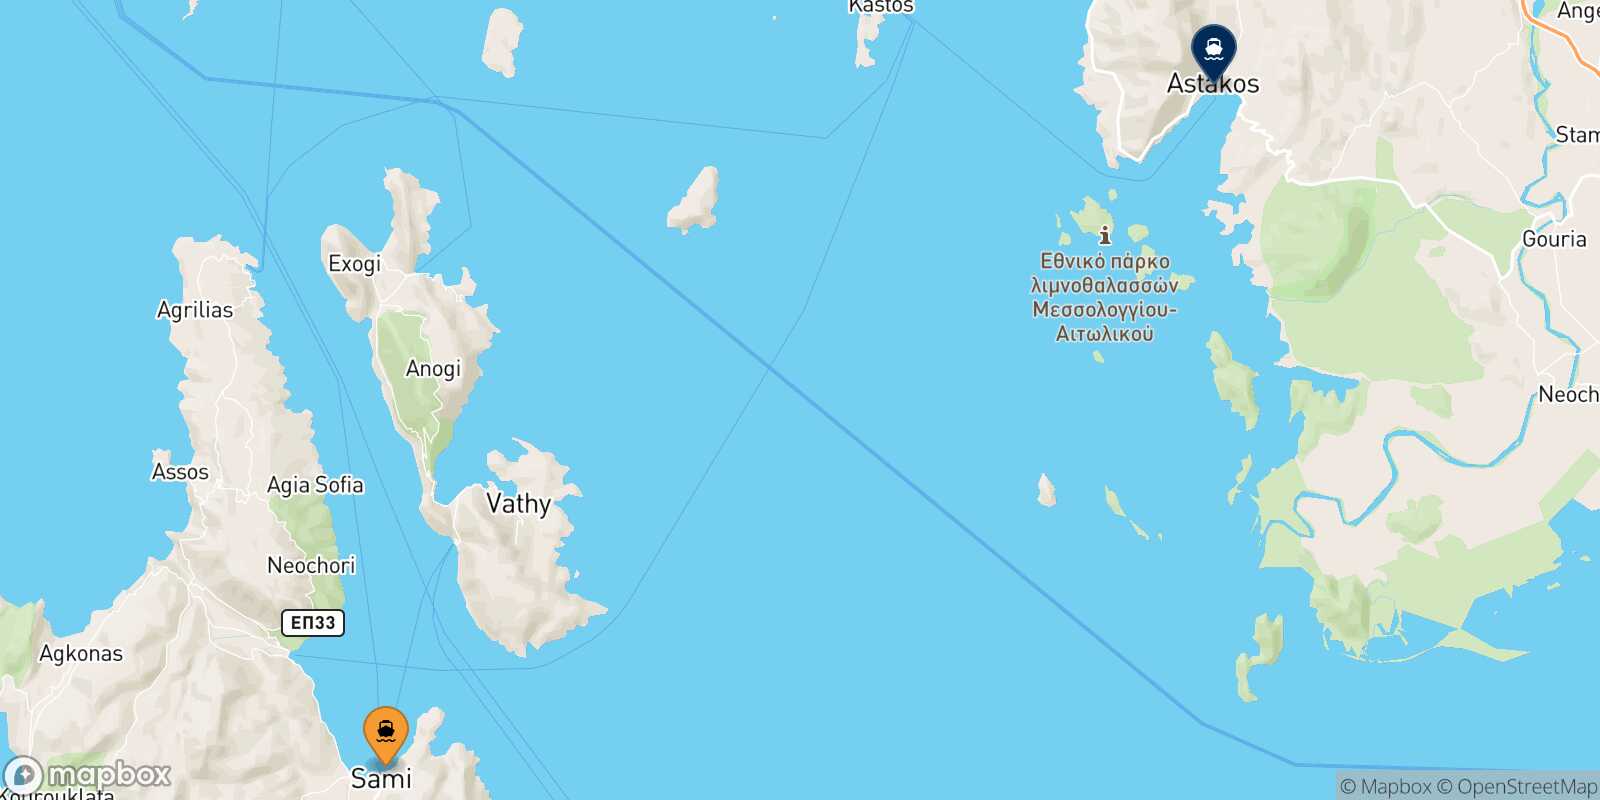 Mapa de la ruta Sami (Cefalonia) Astakos